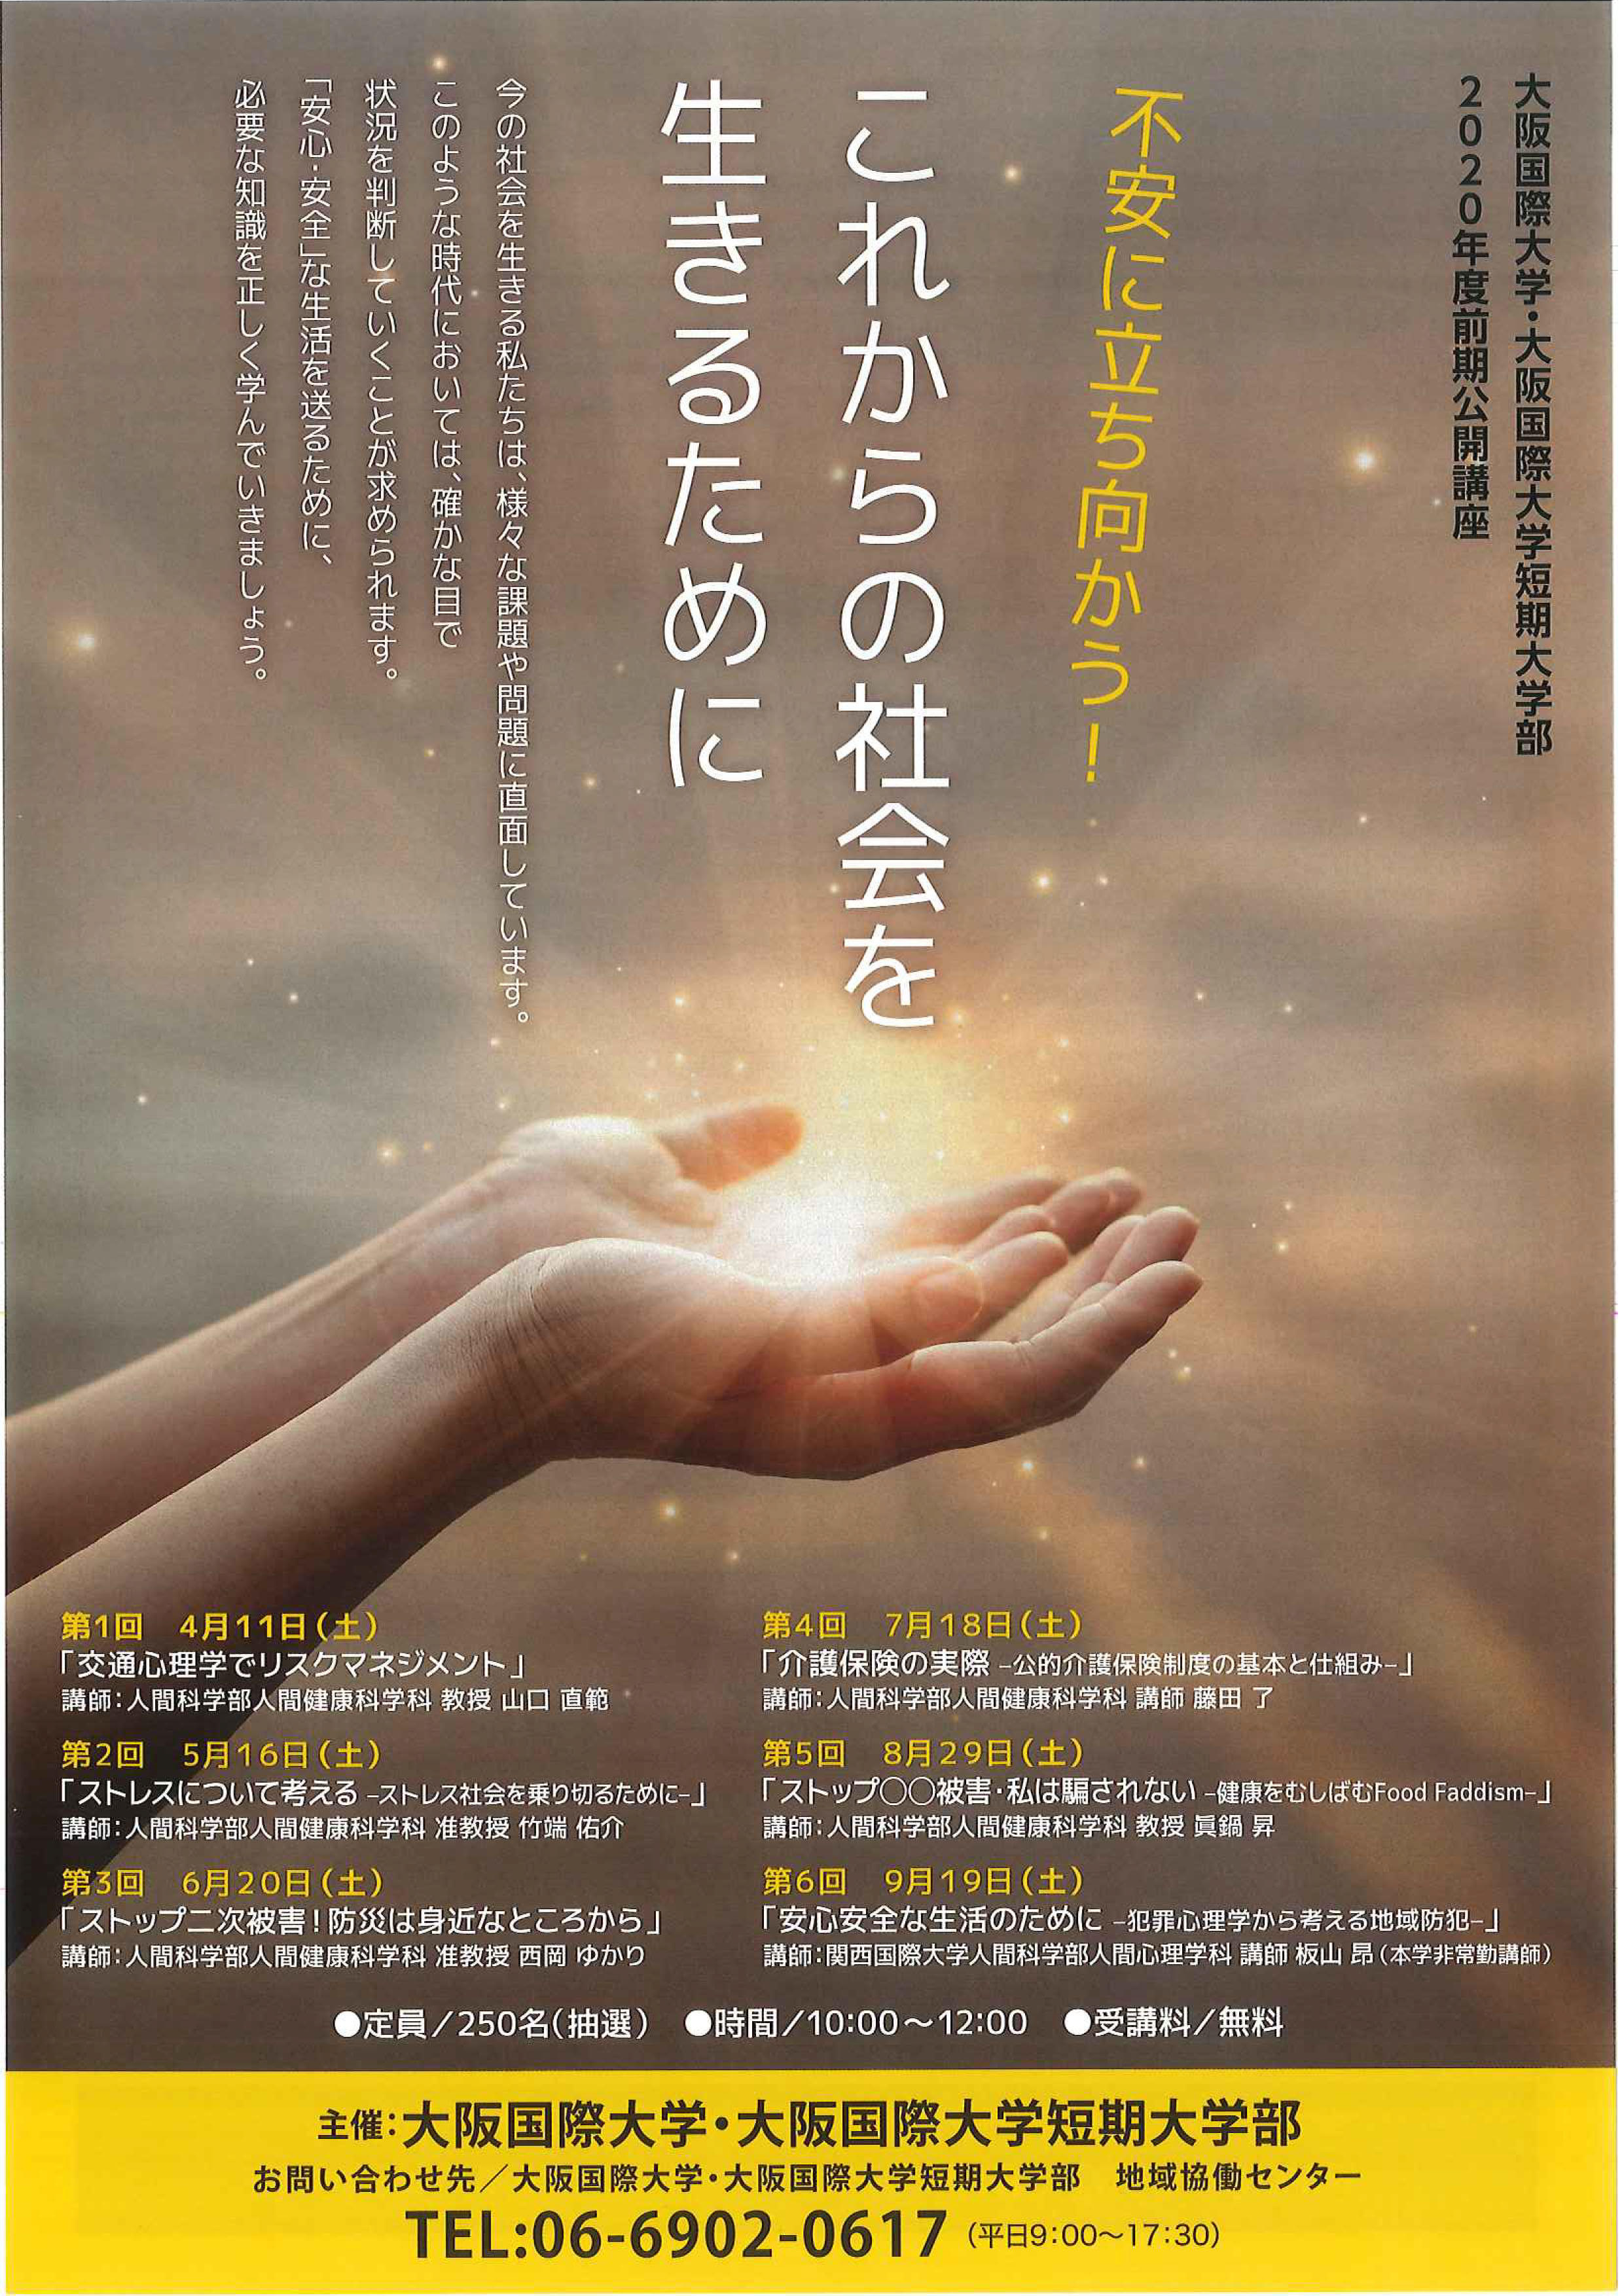 大阪国際大学・大阪国際大学短期大学部が社会人のための公開講座を開講 -- 「不安に立ち向かう！これからの社会を生きるために」をテーマに、4月から毎月1回、全6回開催。受講生募集開始！